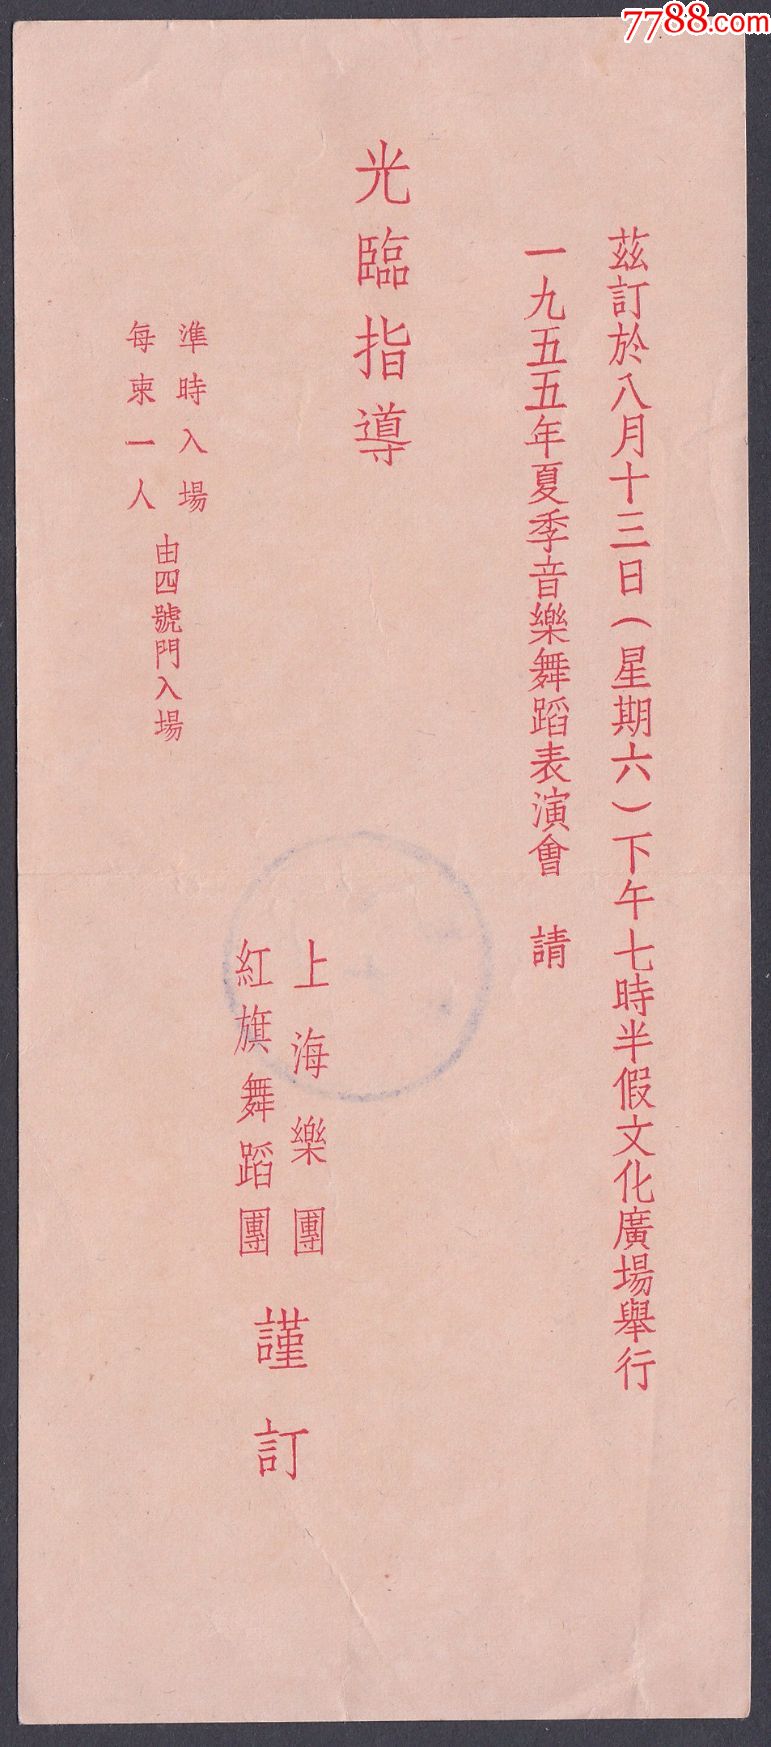 1955年上海乐团红旗舞蹈团,音乐舞蹈表演会请柬